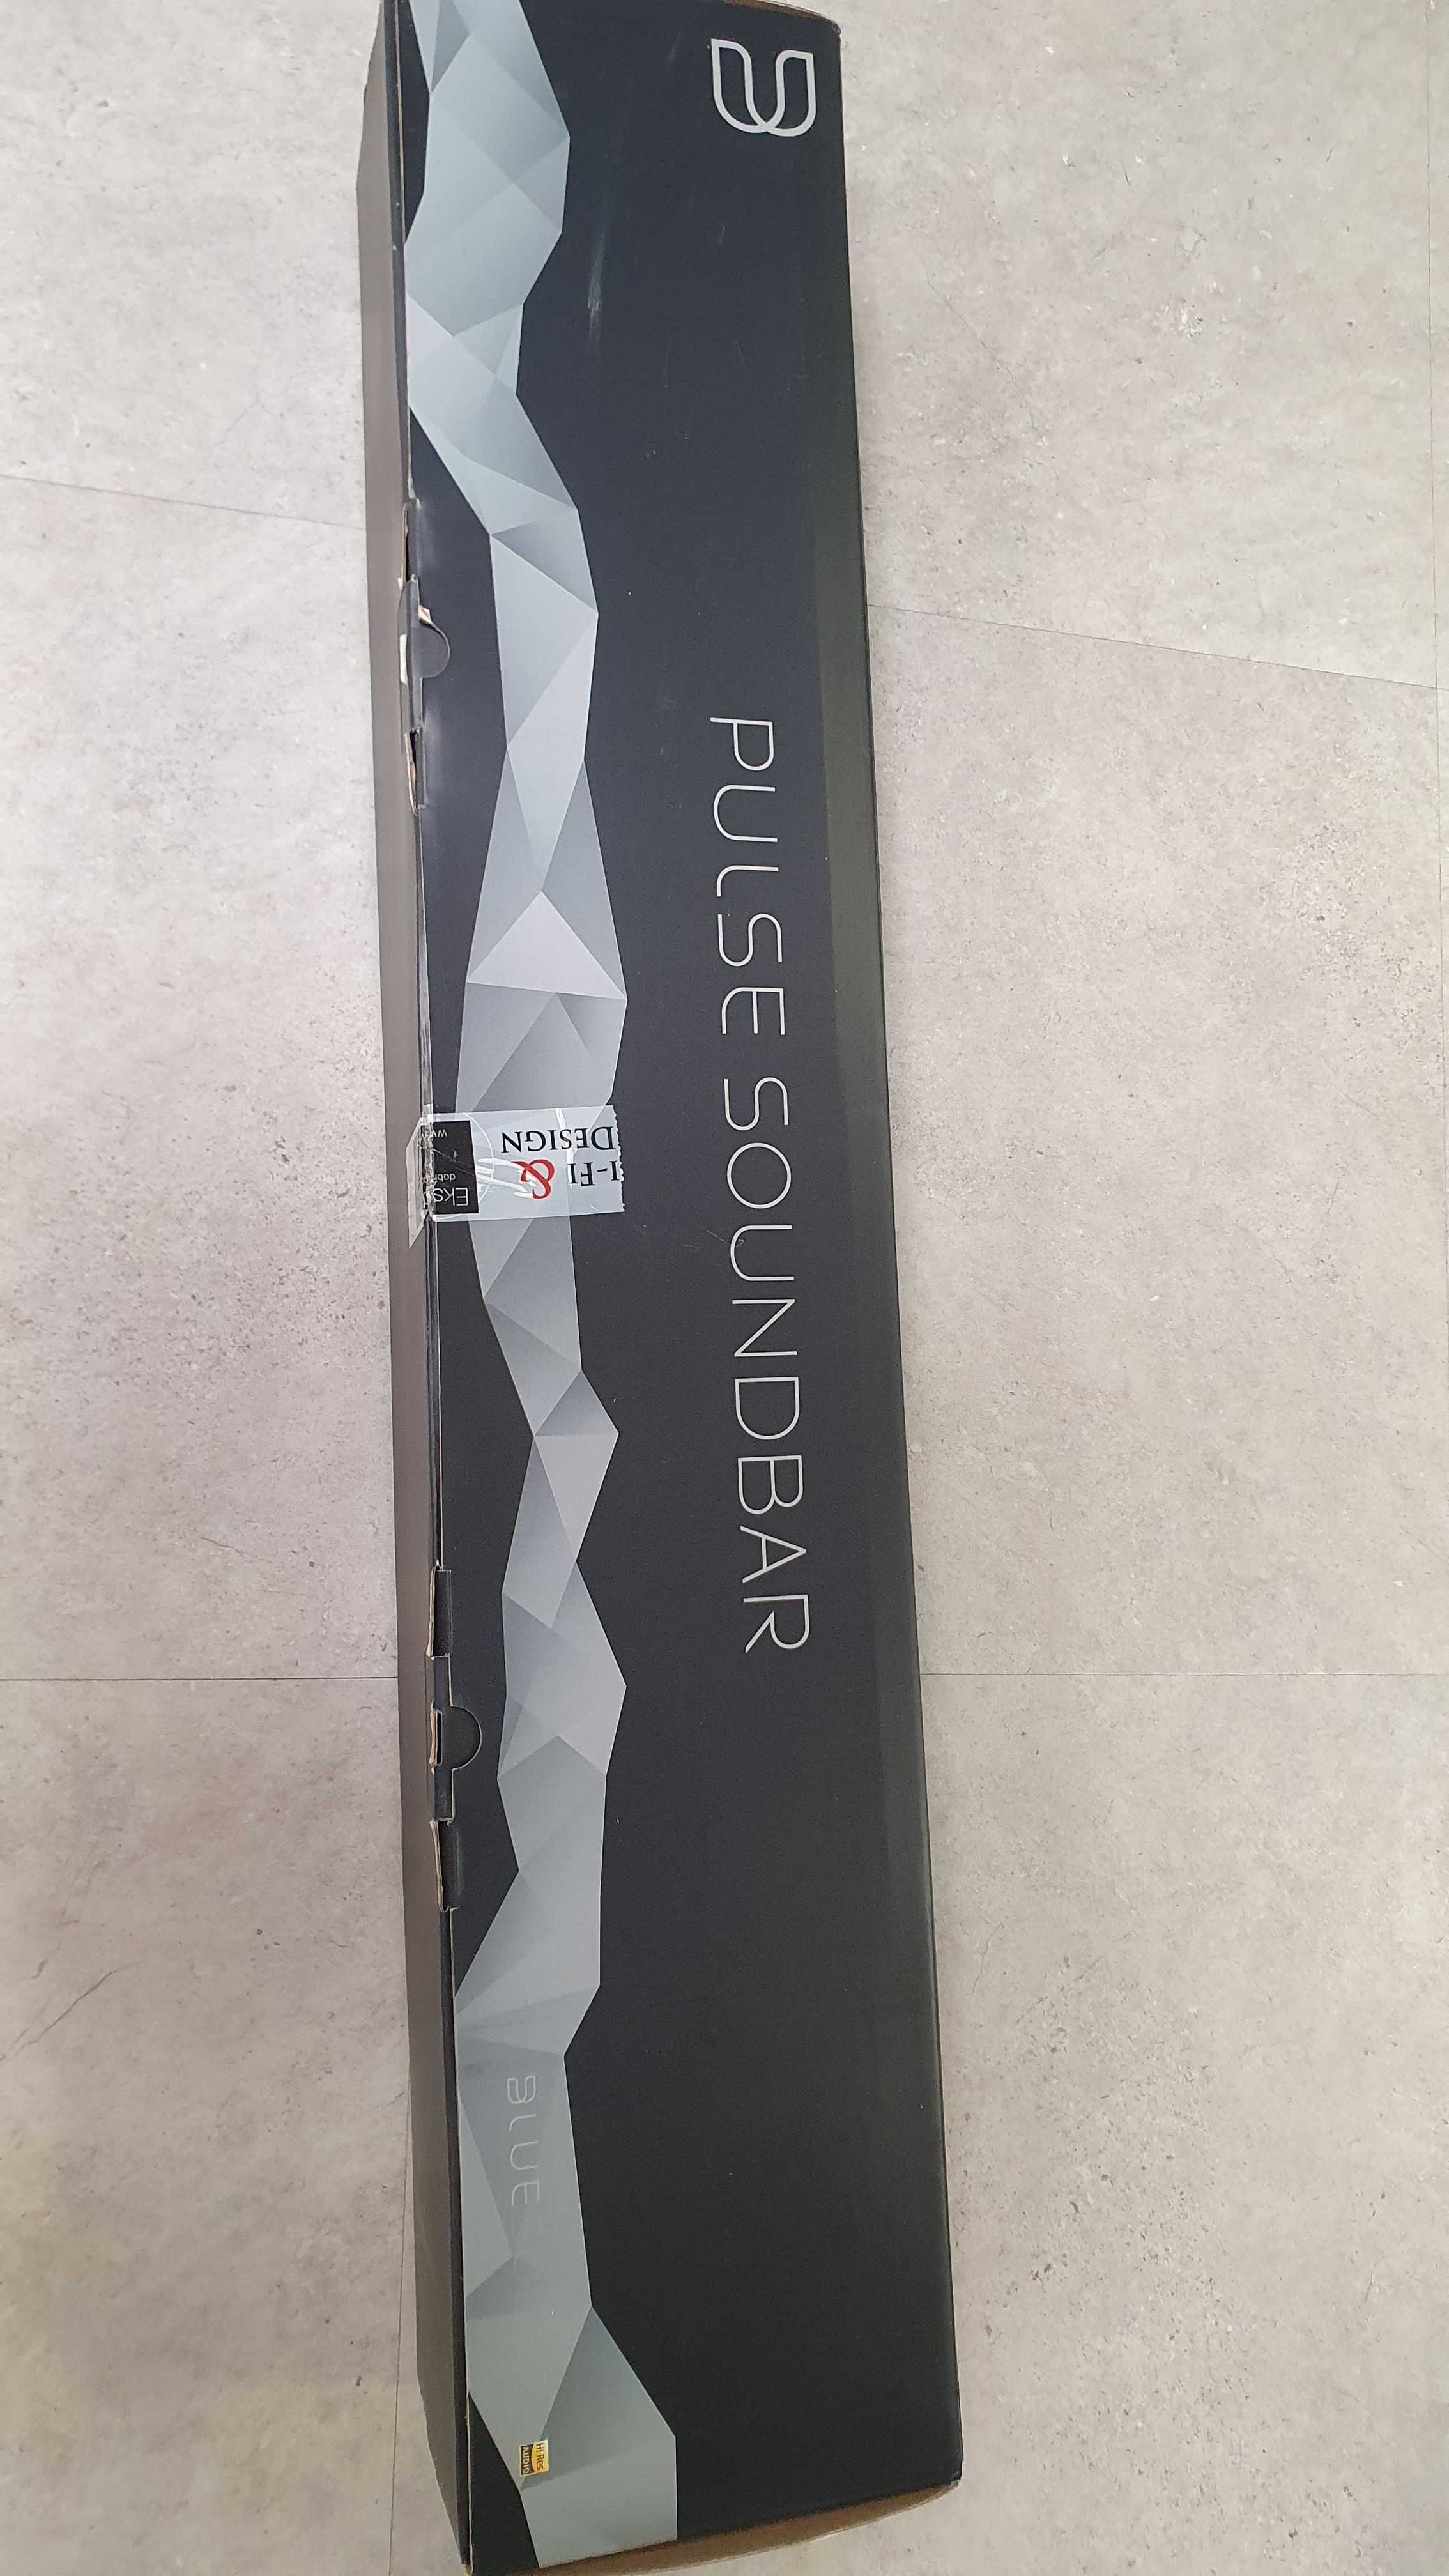 Soundbard premium- Bluesound Pulse gen 1, Wifi,